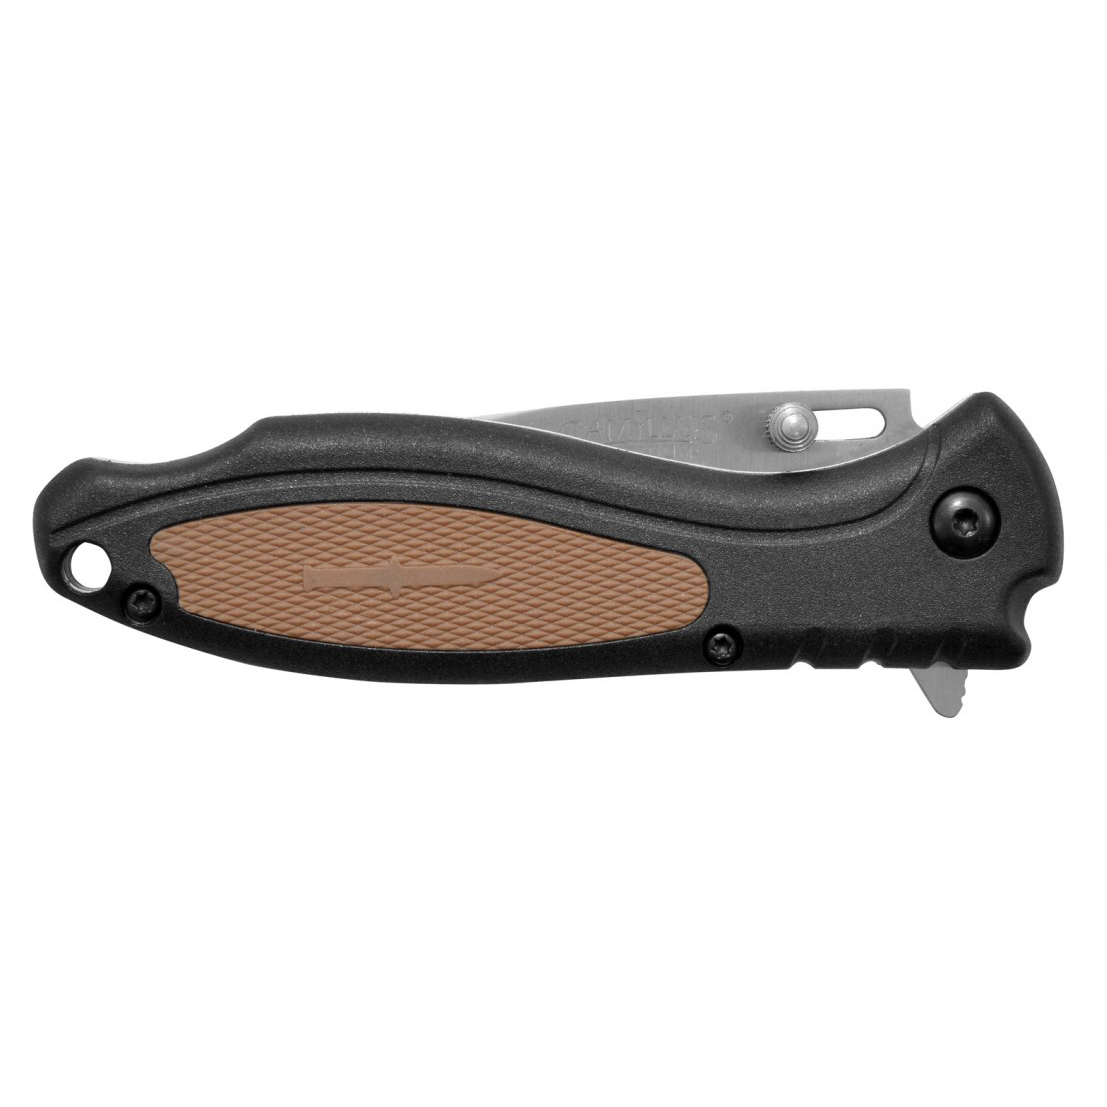 Нож складной Camillus Black TigerSharp, сталь 420J2, рукоять термопластик GFN, чёрно-коричневый от Ножиков